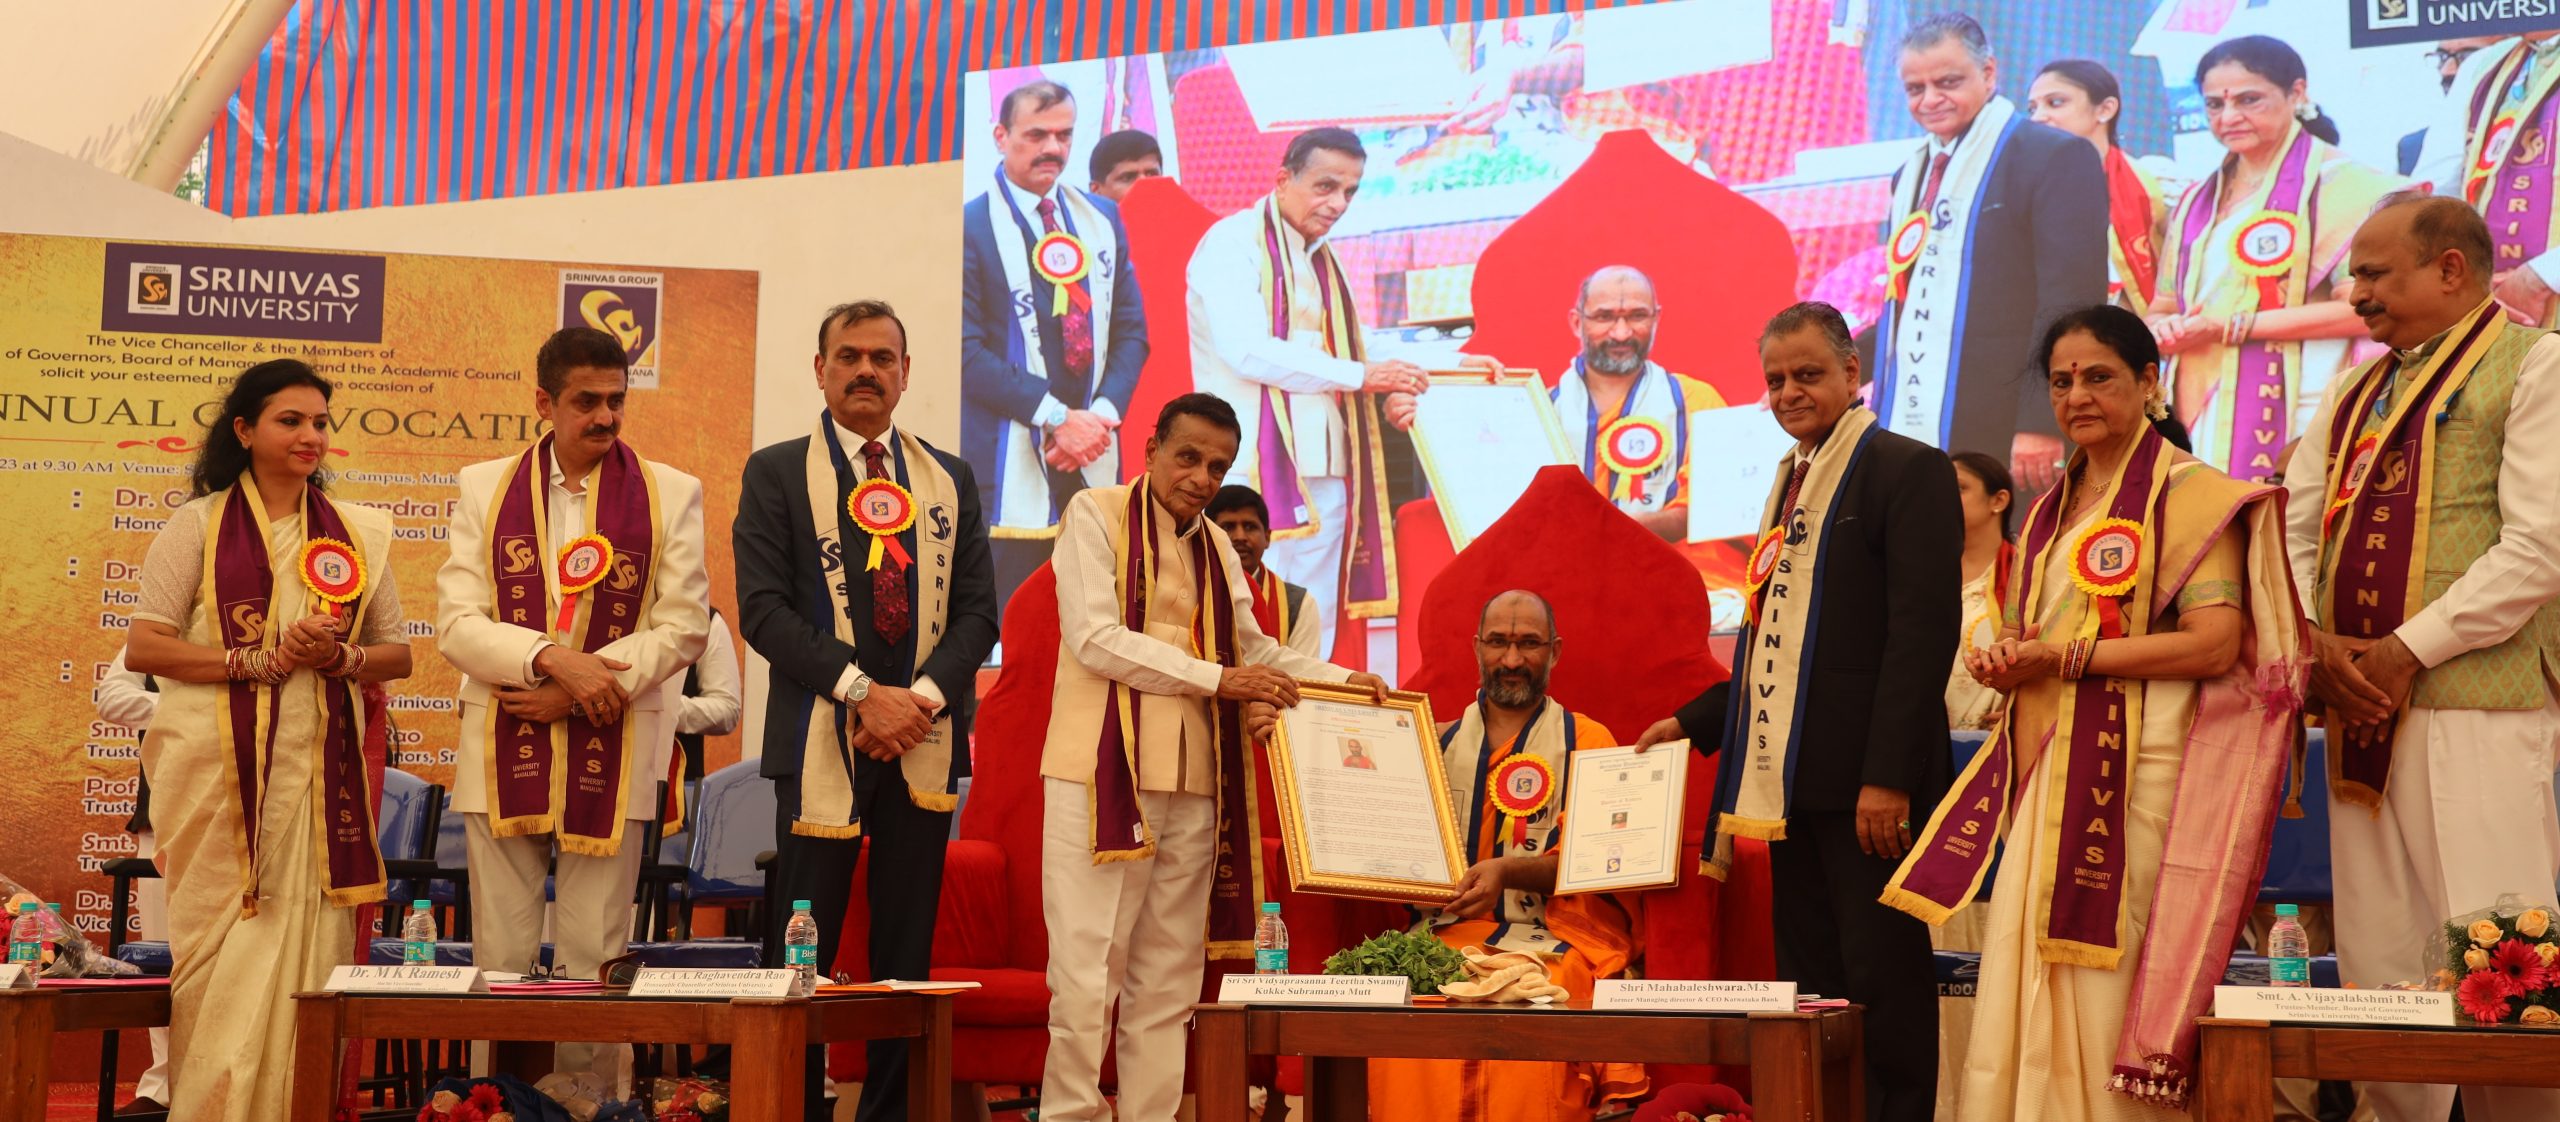 Sri Vidyaprasanna Tirtha Swamiji and M.S. Mahabaleshwar Rao Receive Honorary Doctorates at Srinivas University’s Convocation Day